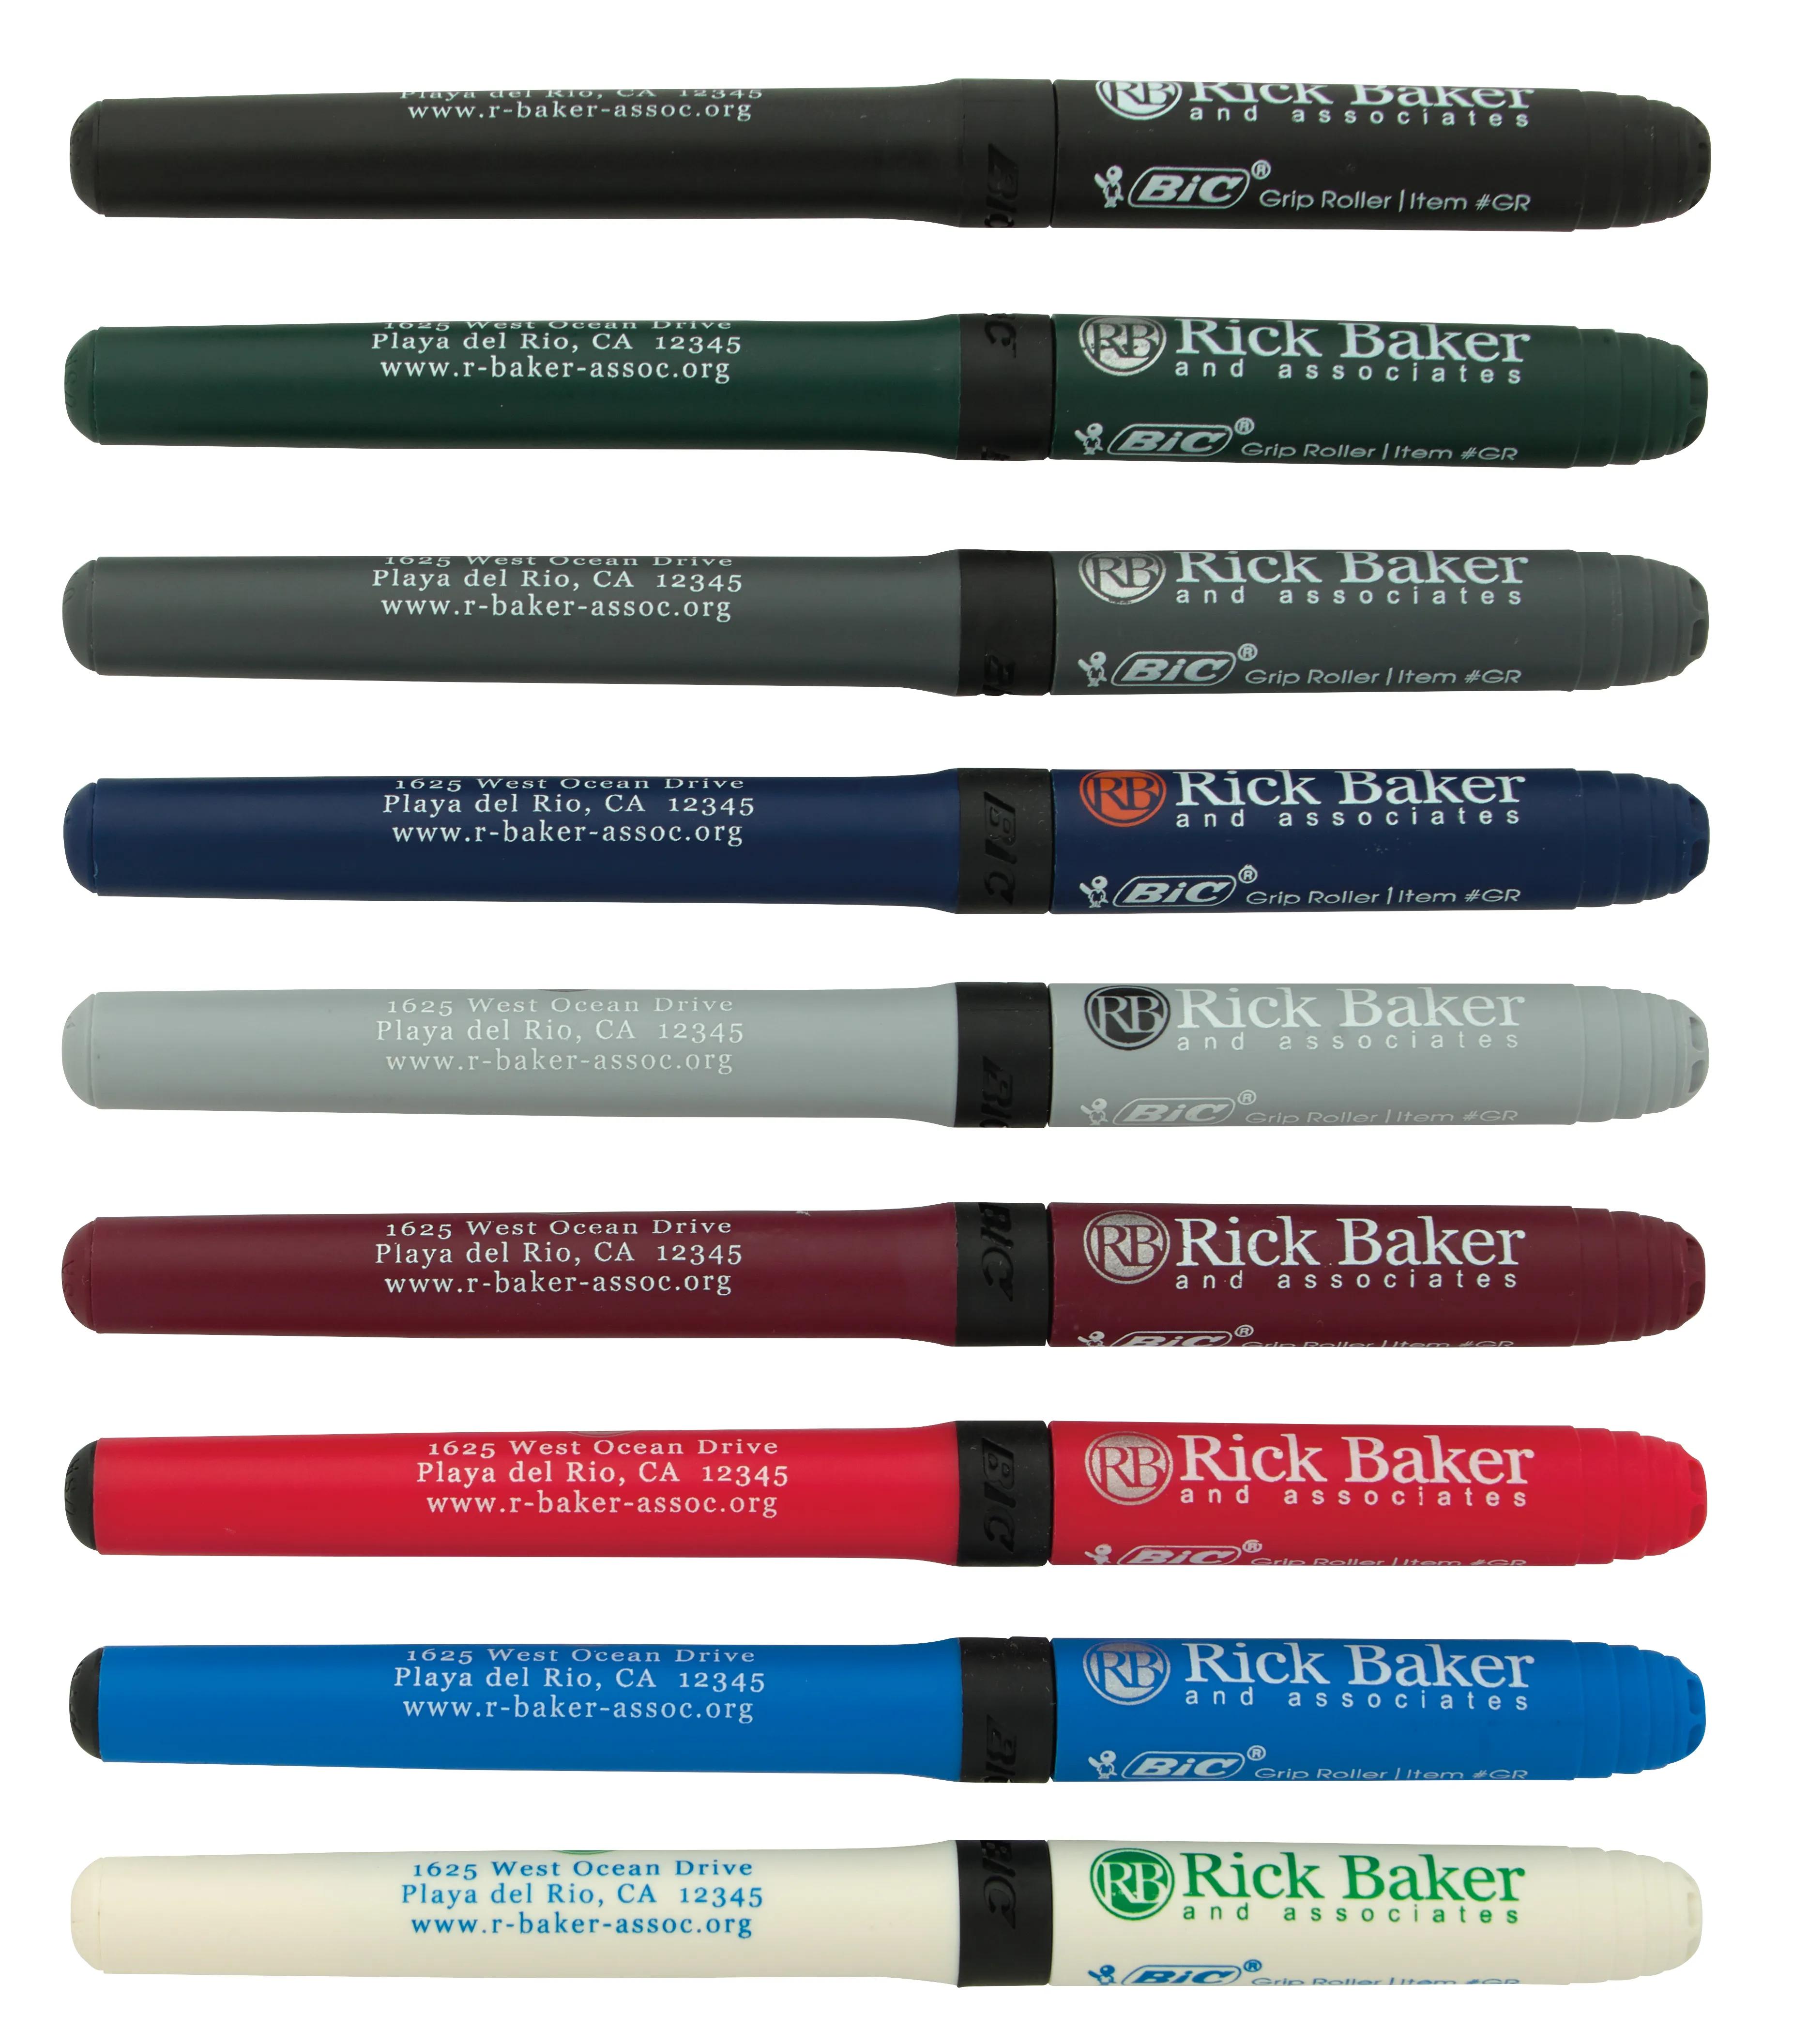 BIC® Grip Roller Pen 103 of 147